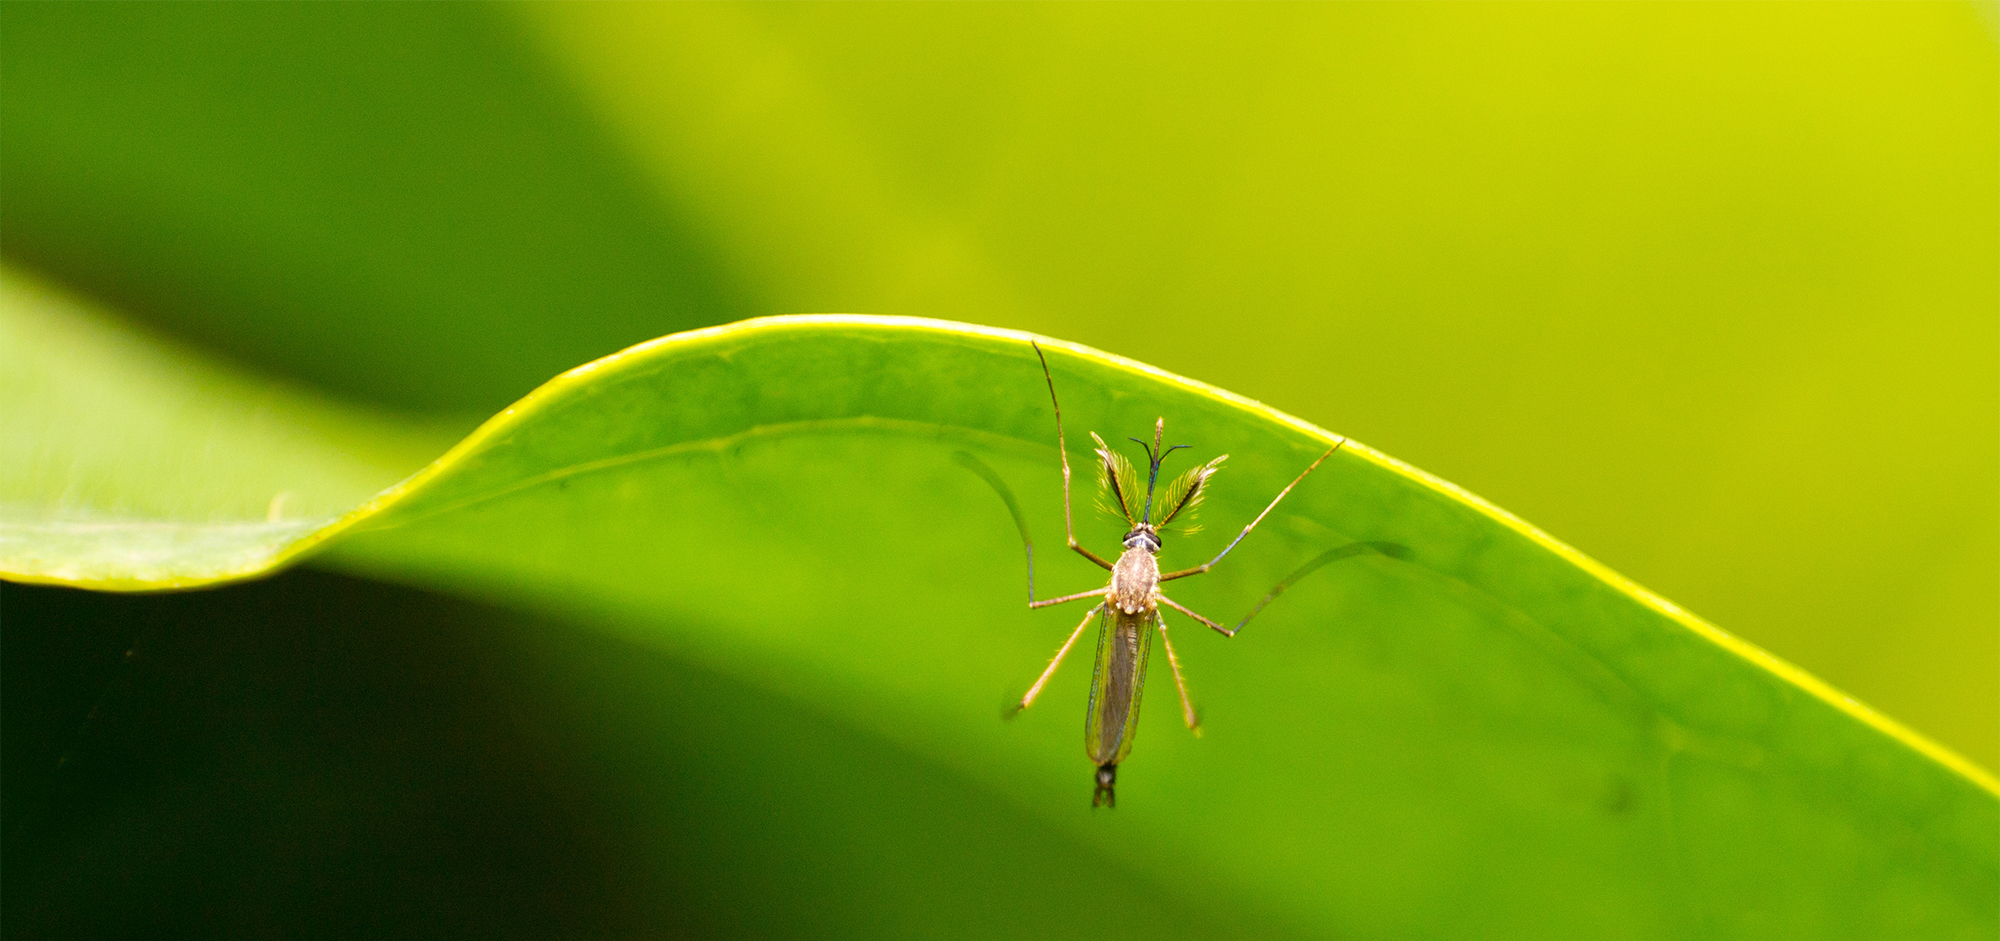 Как избавиться от комаров на все лето